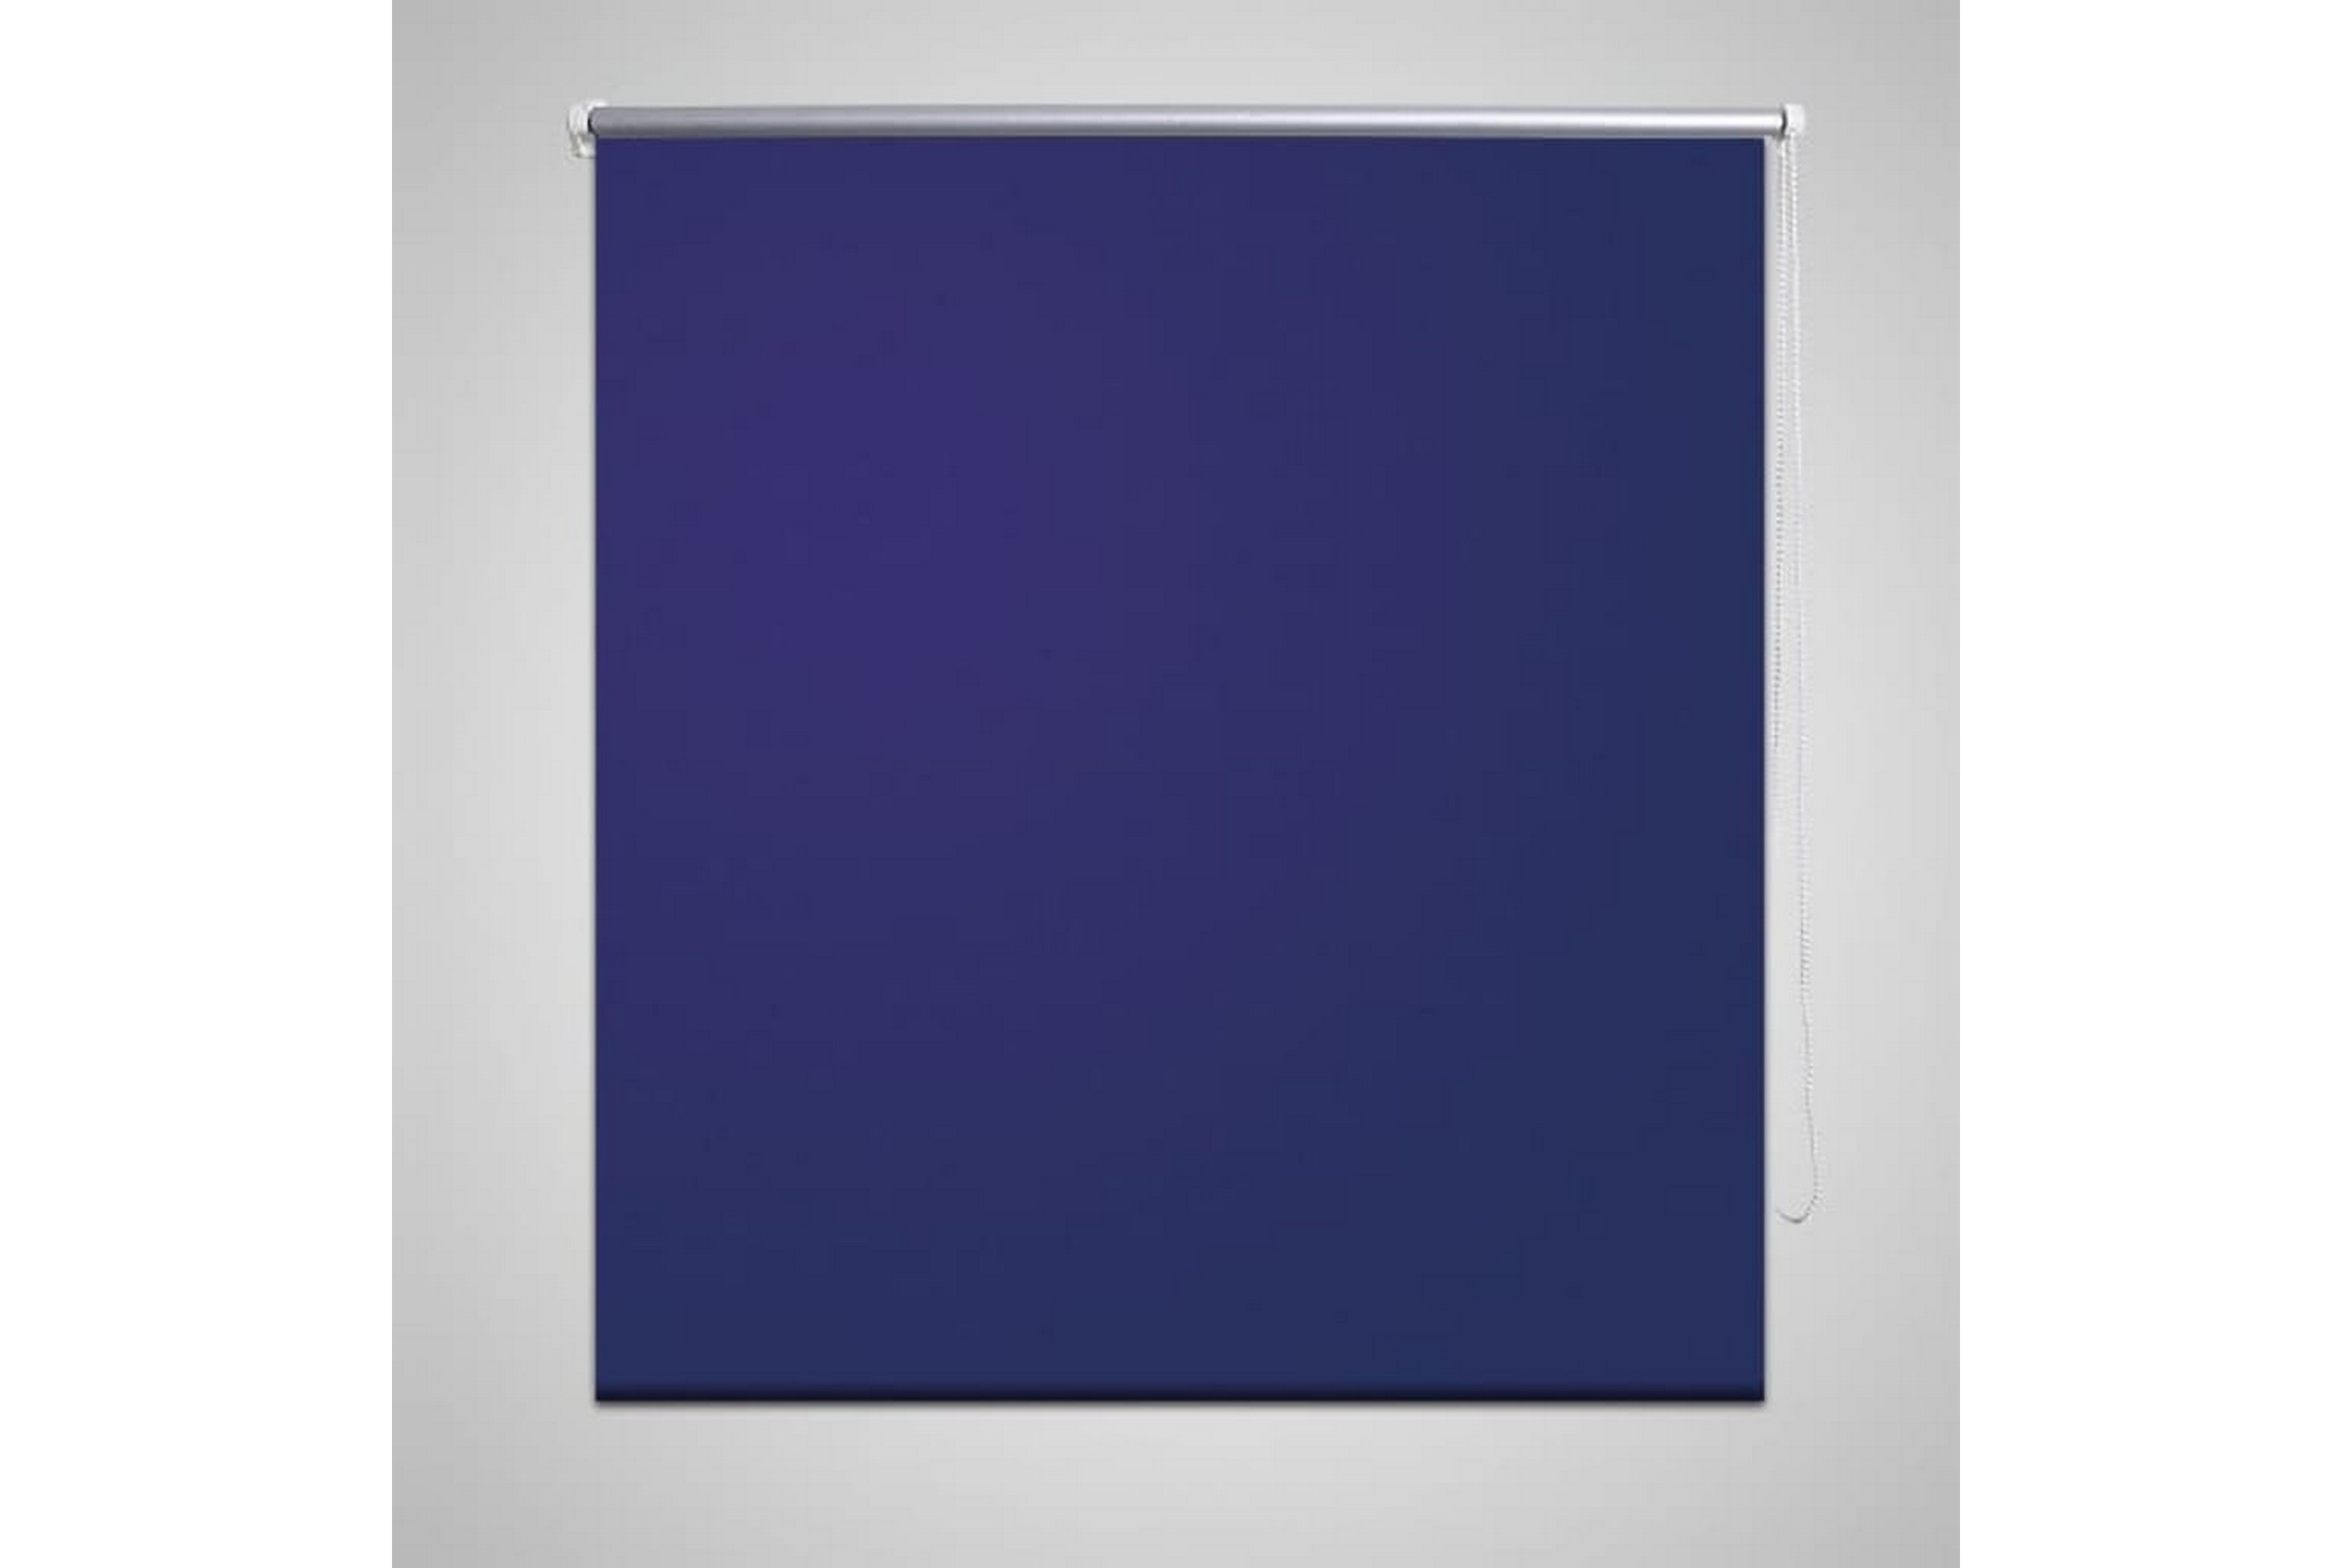 Pimentävä rullaverho 60x120 cm Merensininen - Sininen